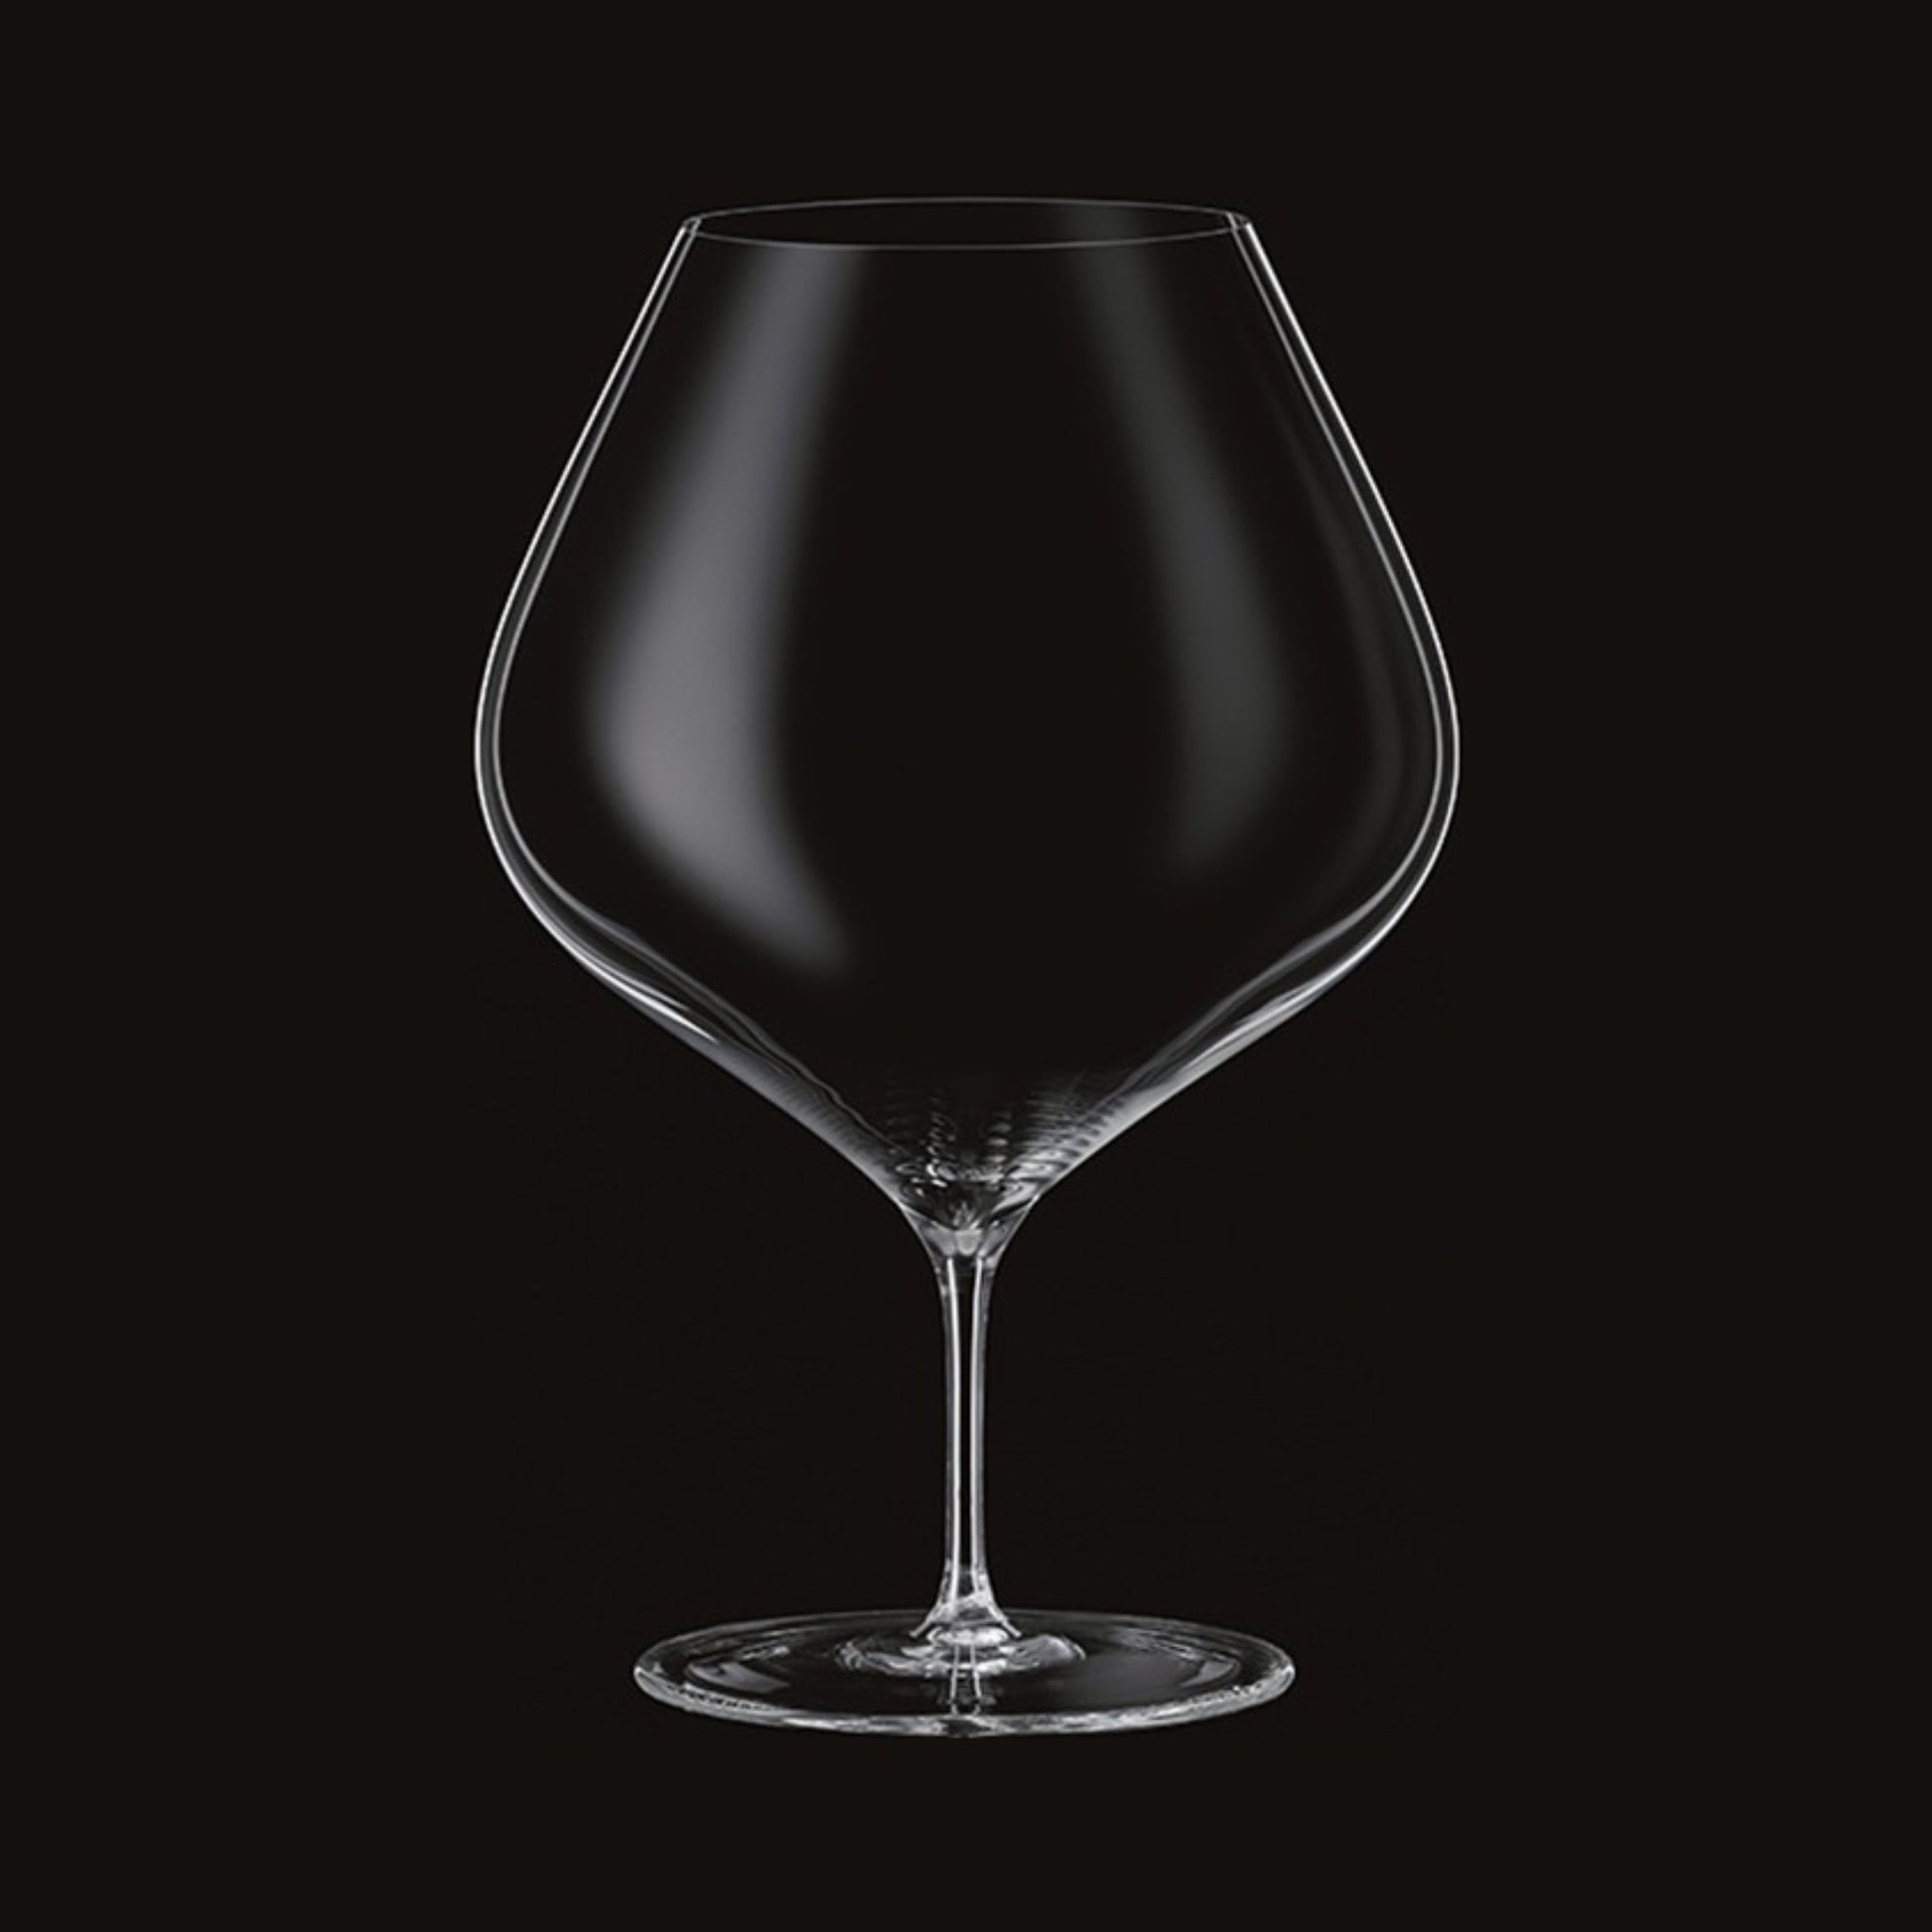 Kimura Granada 32oz Bourgogne Wine Glass - Grand Vin Pte Ltd